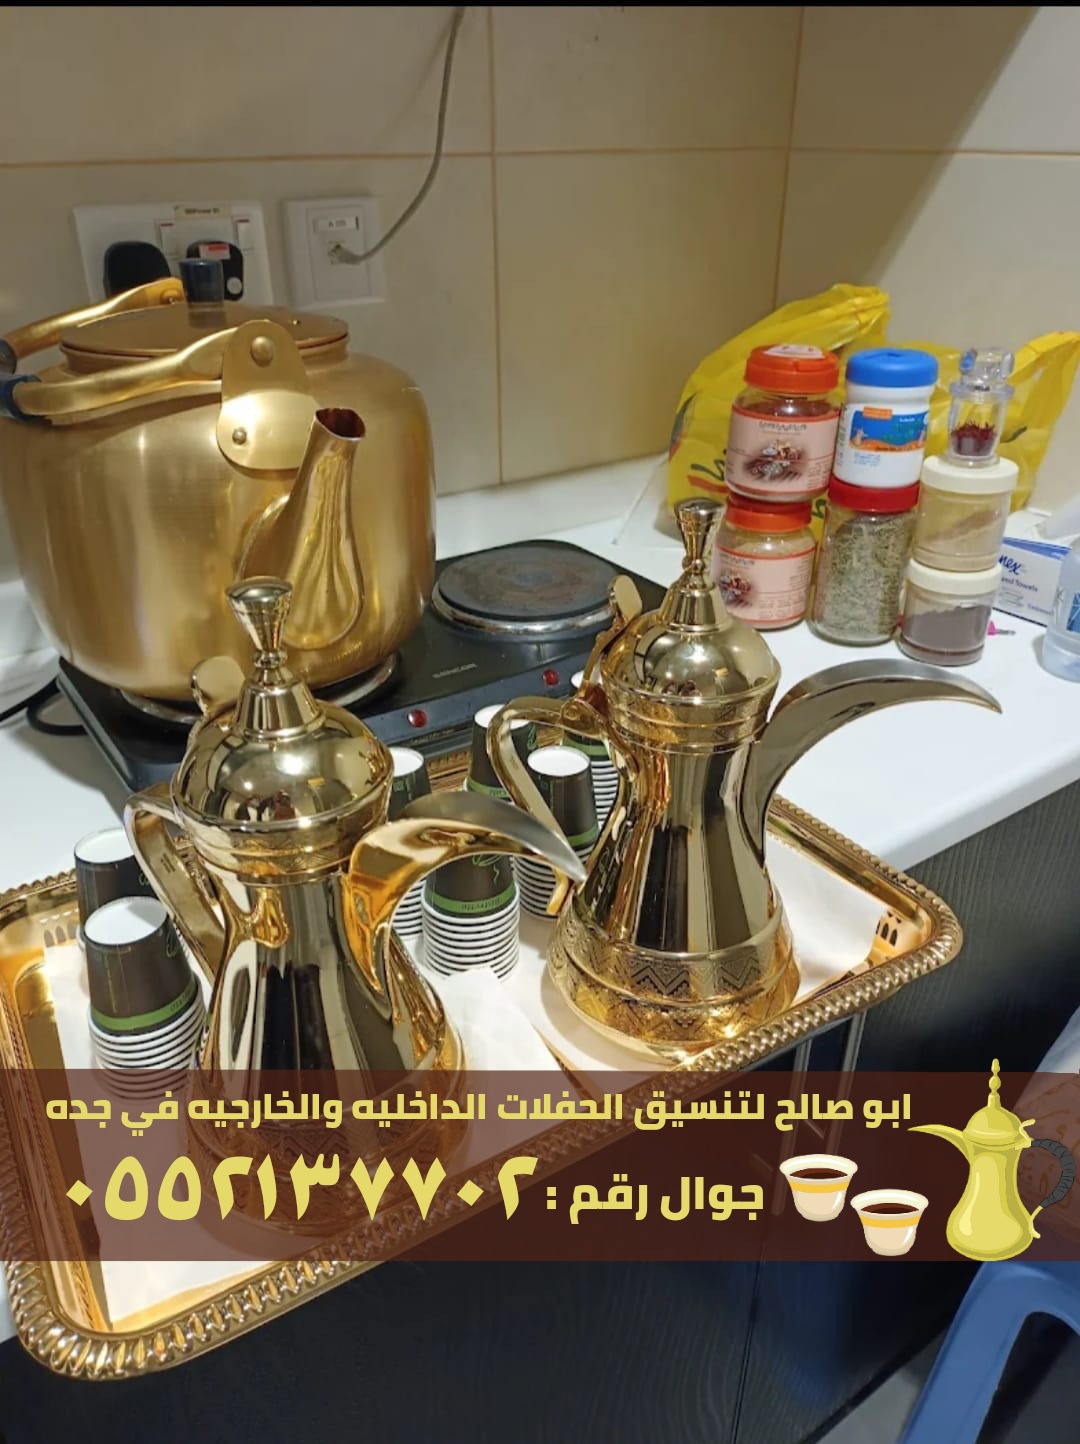 صبابين قهوة في جدة و صبابات قهوه , 0552137702 P_2371opv885